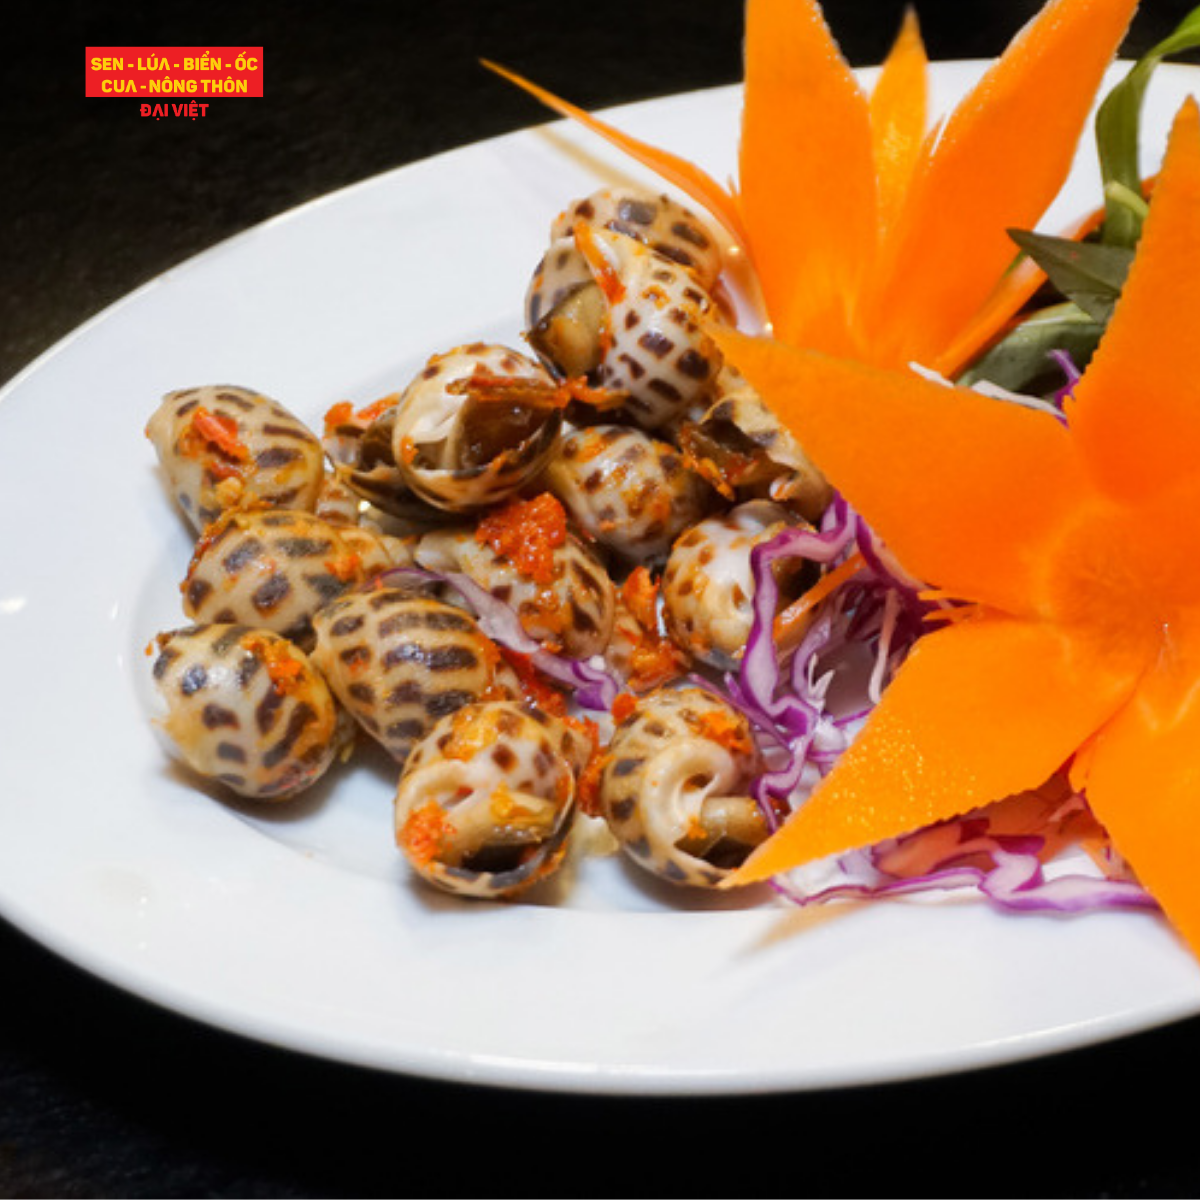  Pan-fried Sweet Snail With Salt & Chilli - Ốc Hương Rang Muối Ớt 